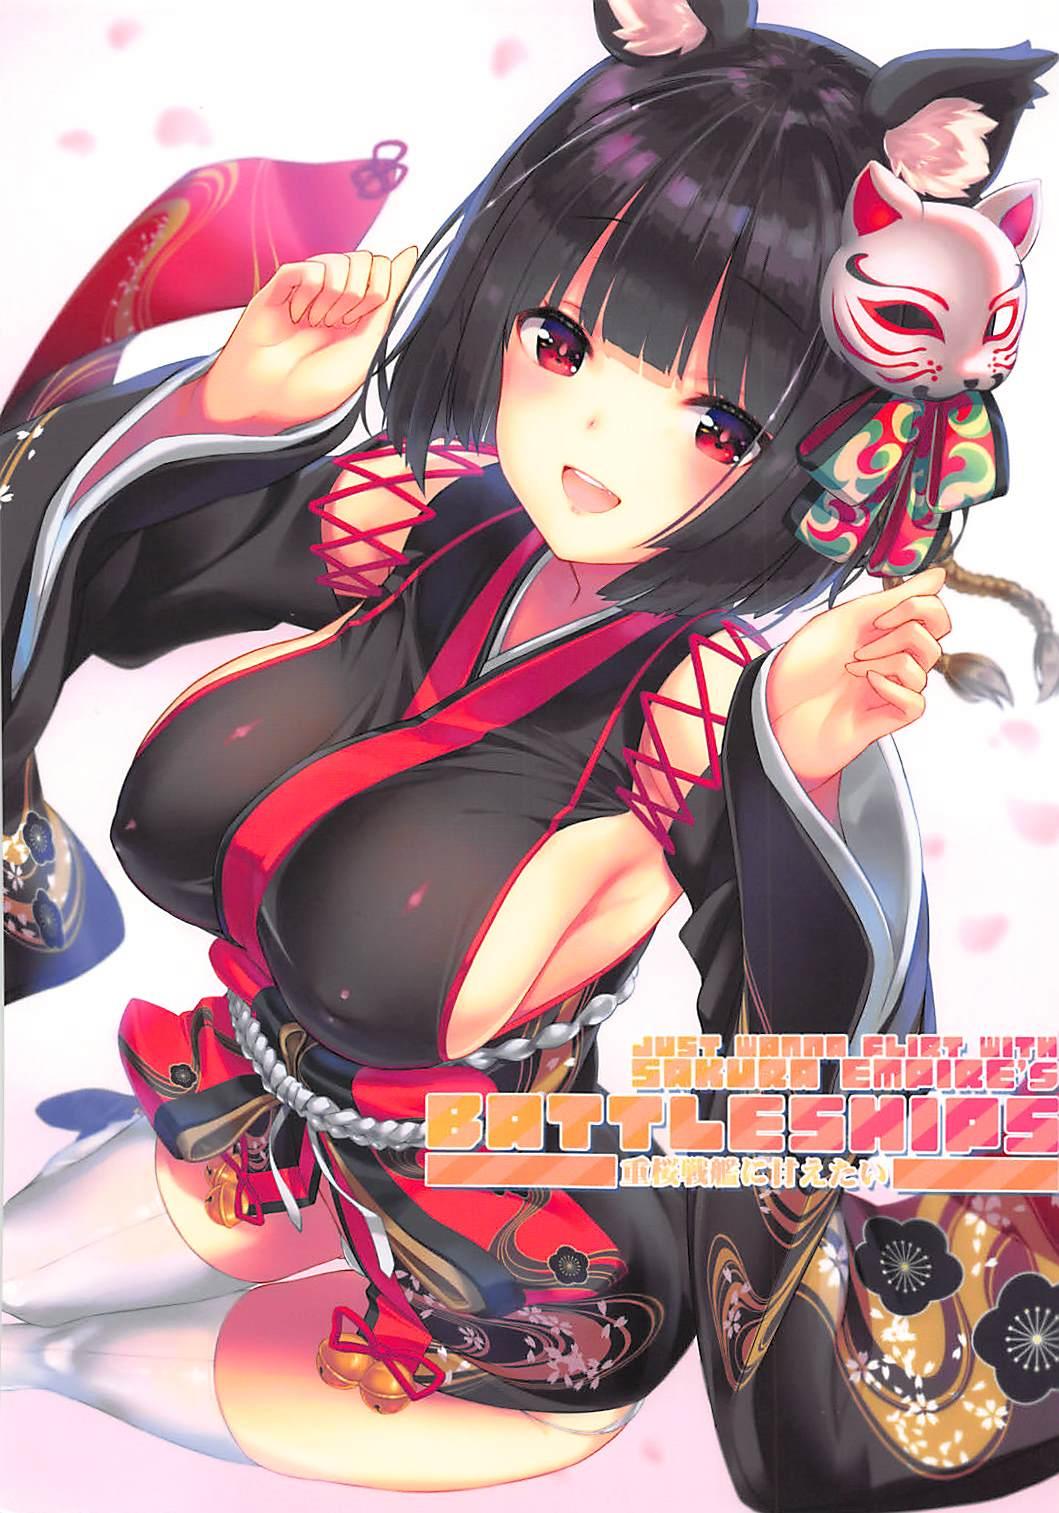 Just Wanna Flirt with Sakura Empire's Battleships - Juuou Senkan ni Amaetai 0